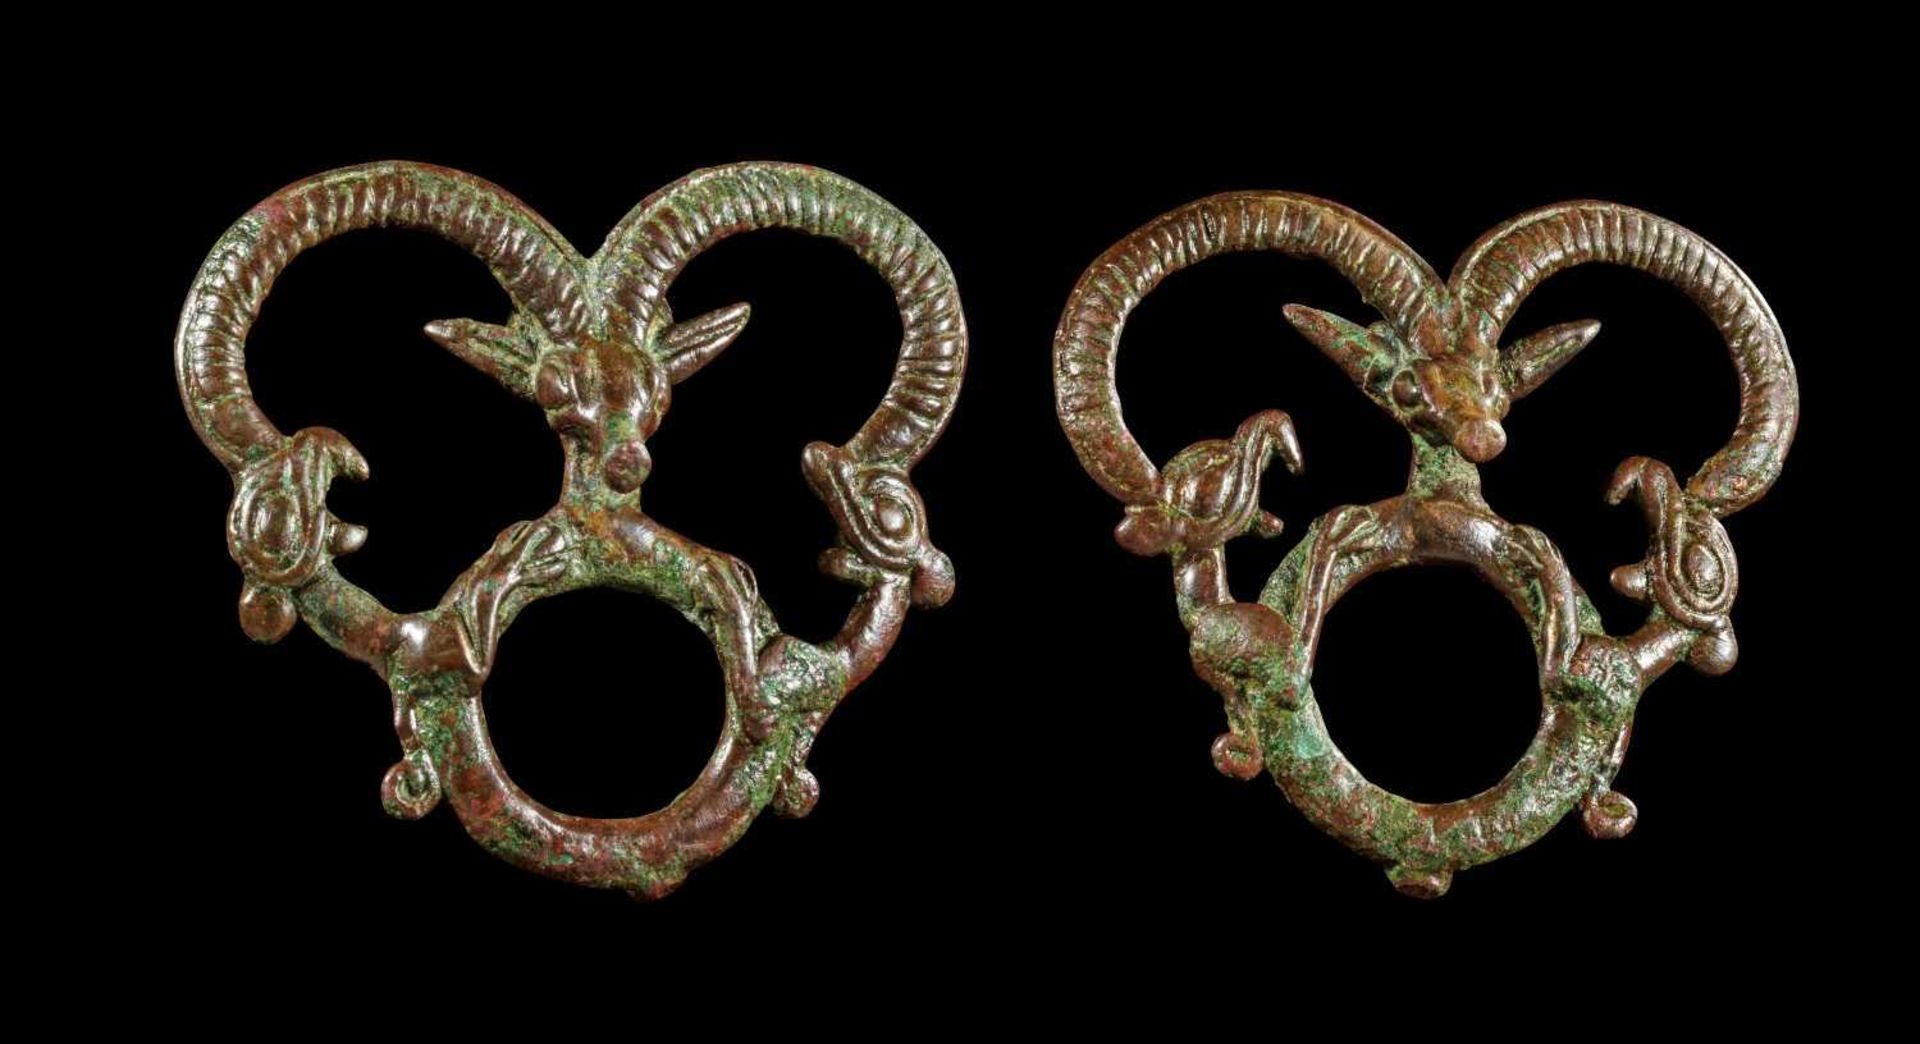 Zwei Pferdeanhänger aus Bronze. Luristan, 1. Viertel 1. Jt. v. Chr. H 8cm, ø 4,8cm. Die Anhänger